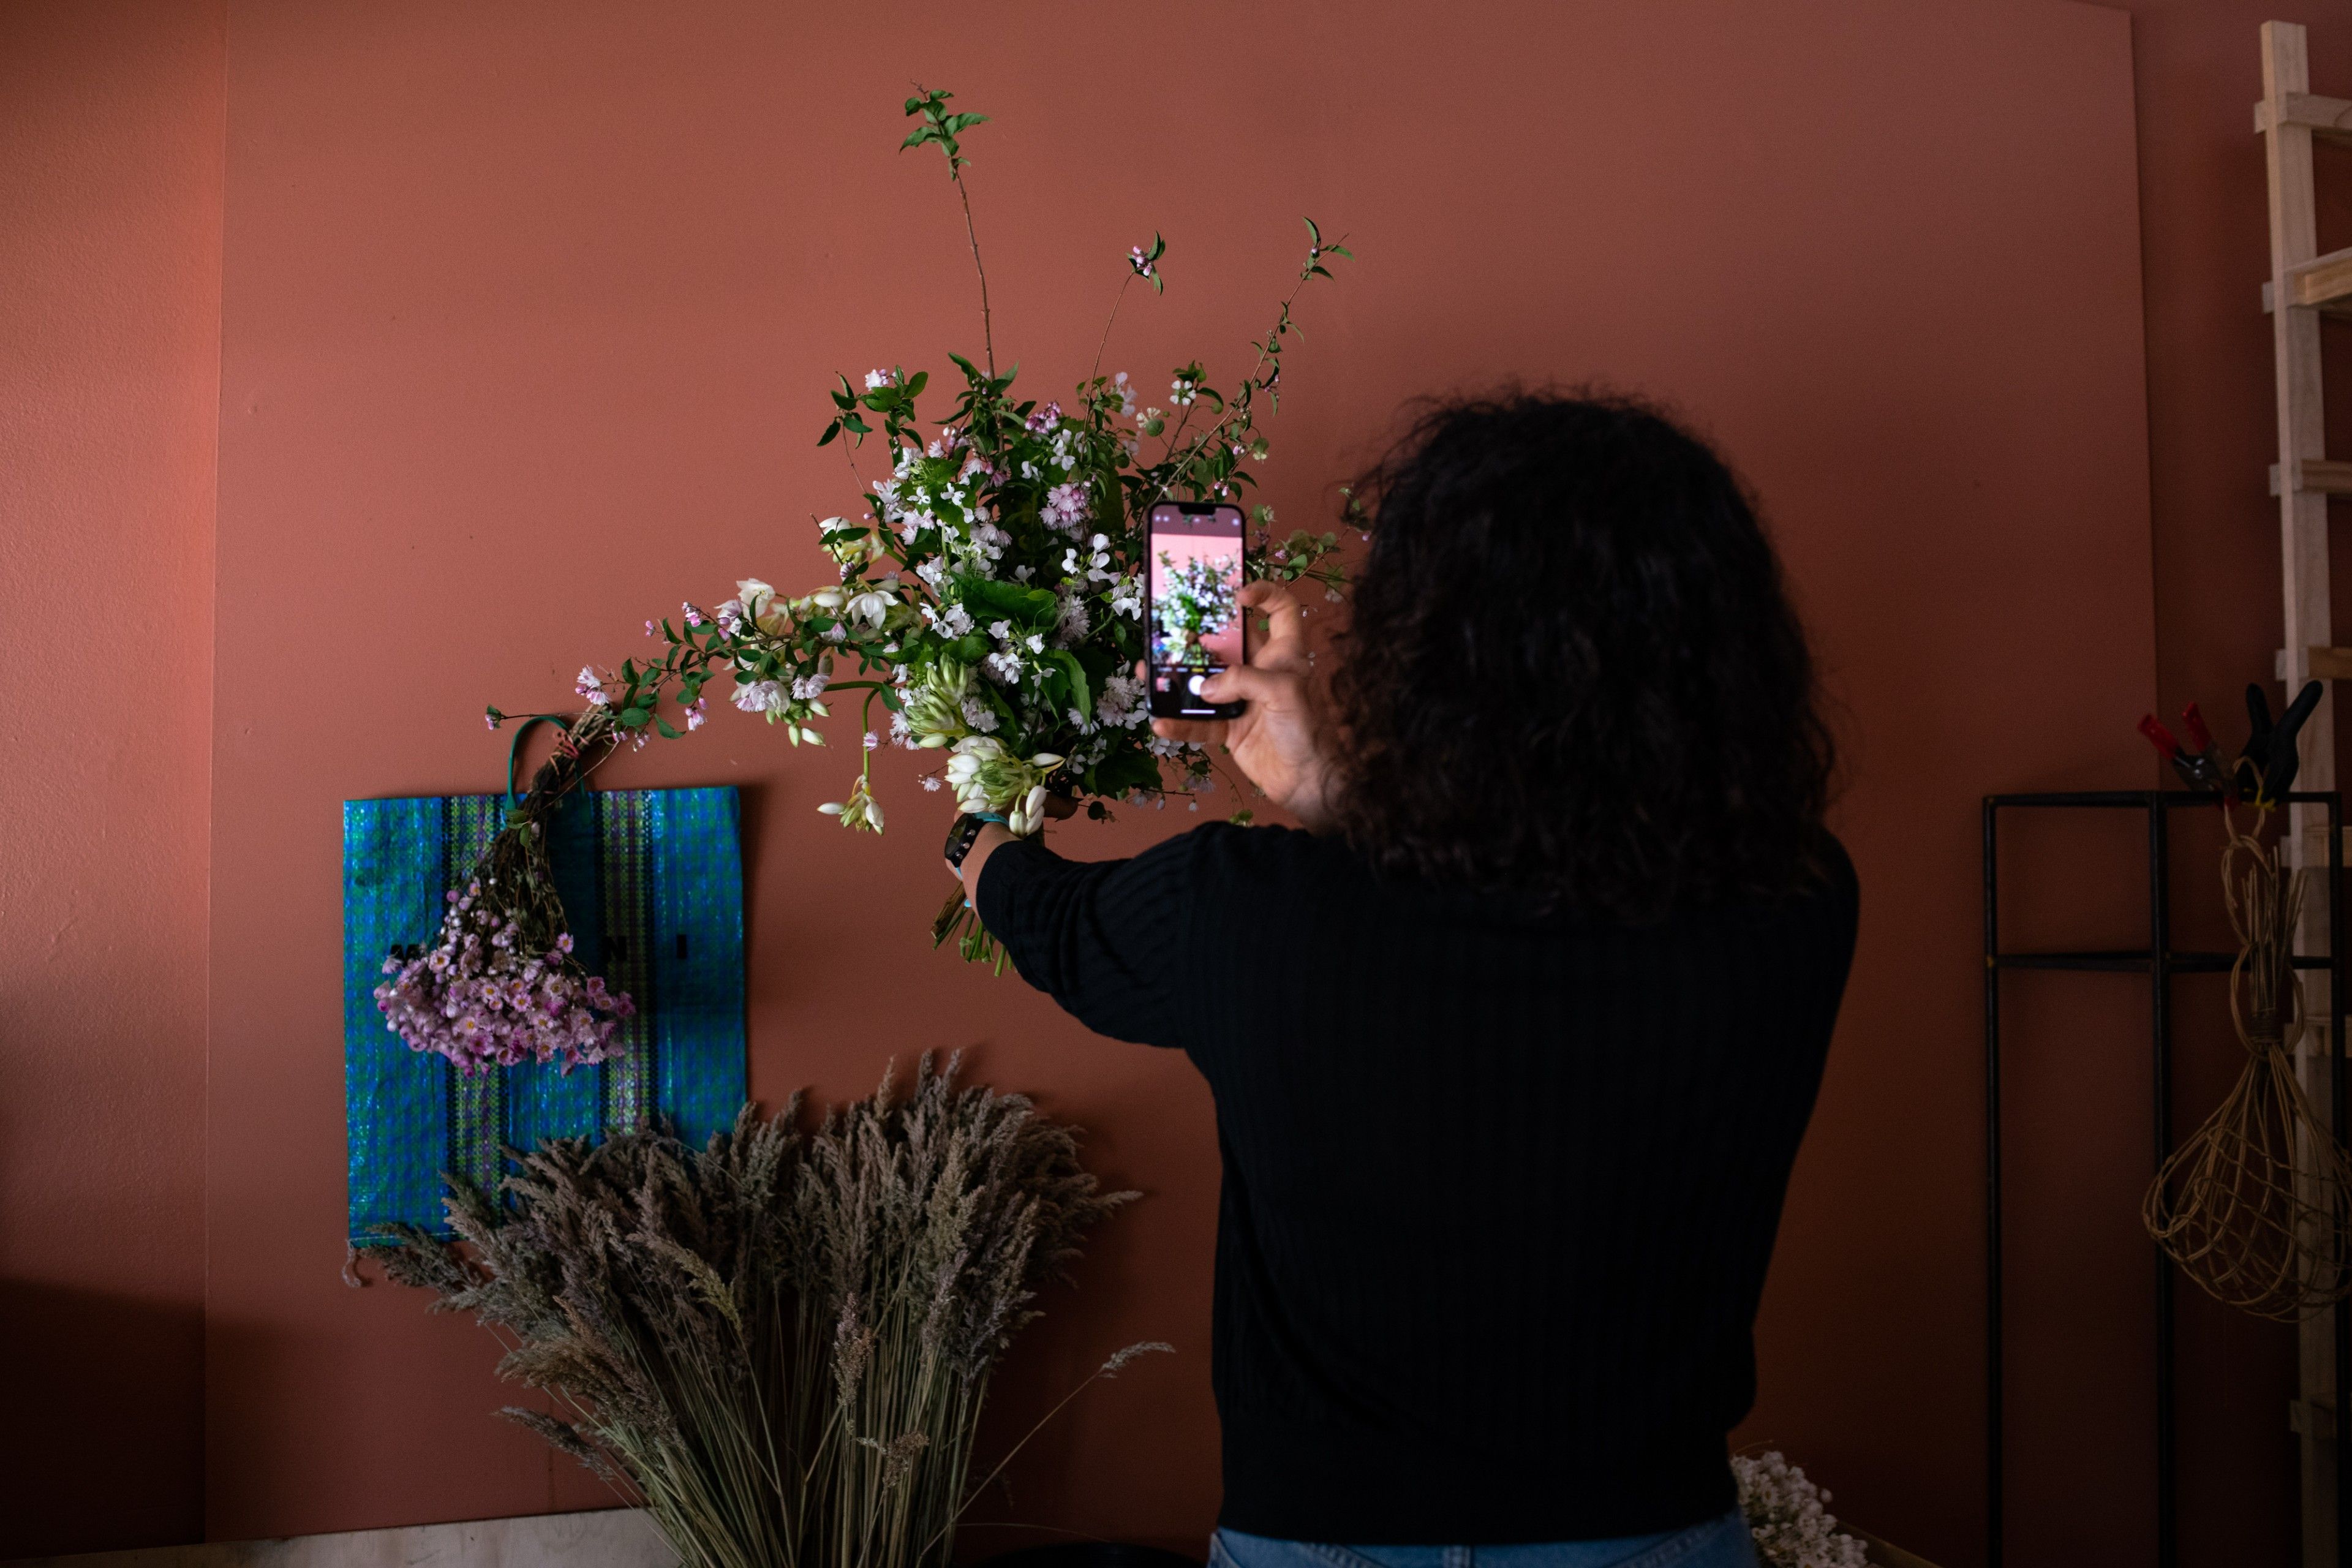 คนขายดอกไม้ถ่ายรูปดอกไม้เพื่อลงรายการบนเว็บไซต์อีคอมเมิร์ซของตน